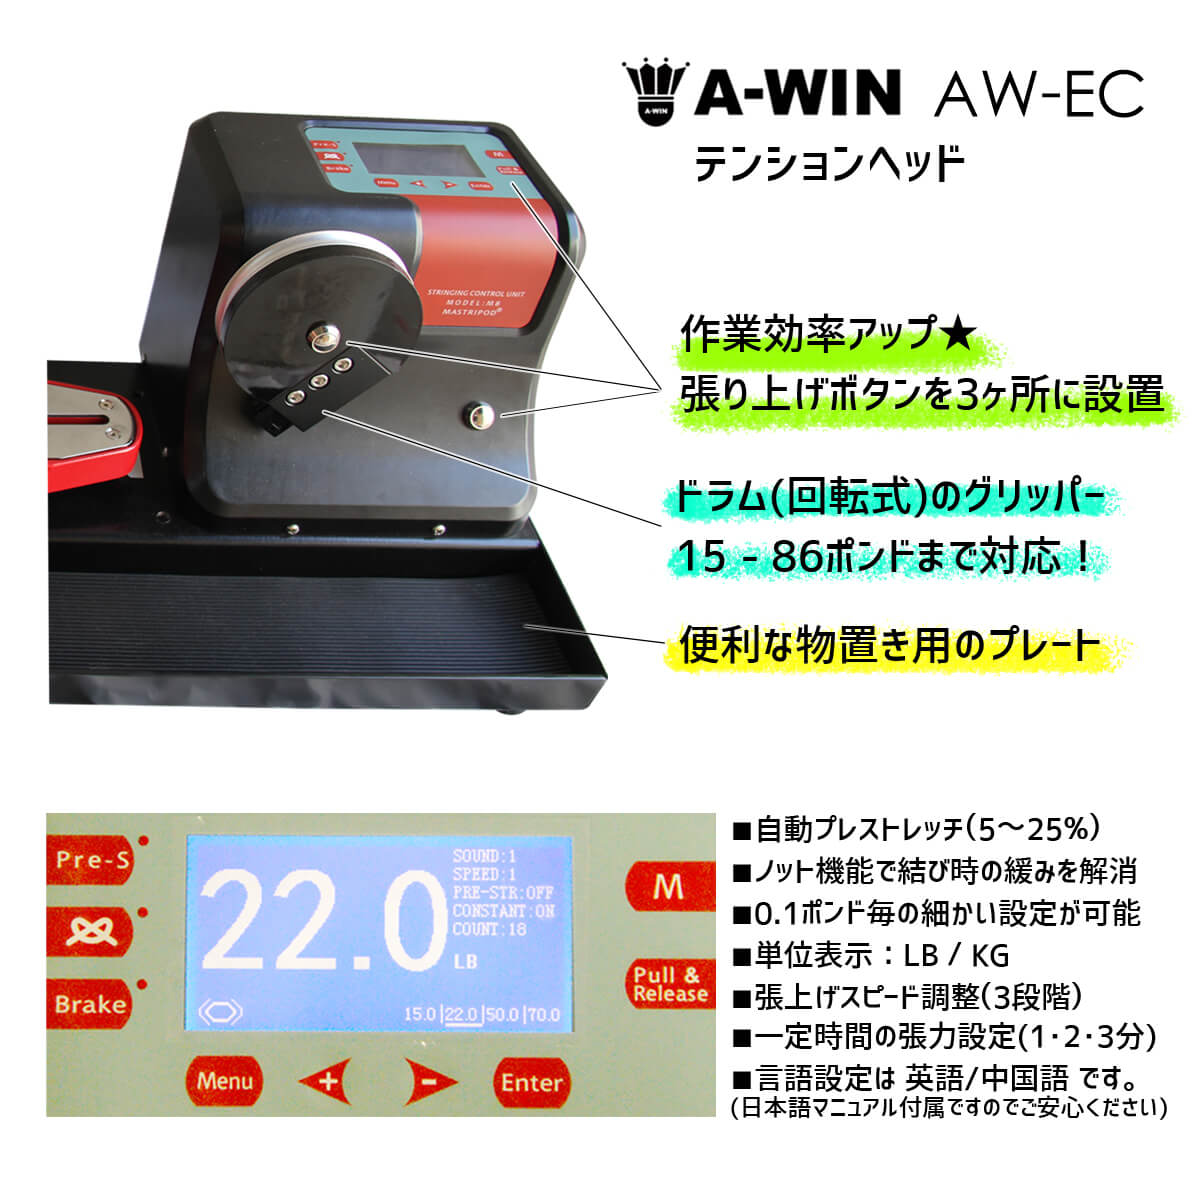 ポスターフレーム 【予約販売】A-WIN AW-EC ストリングマシン 電動式